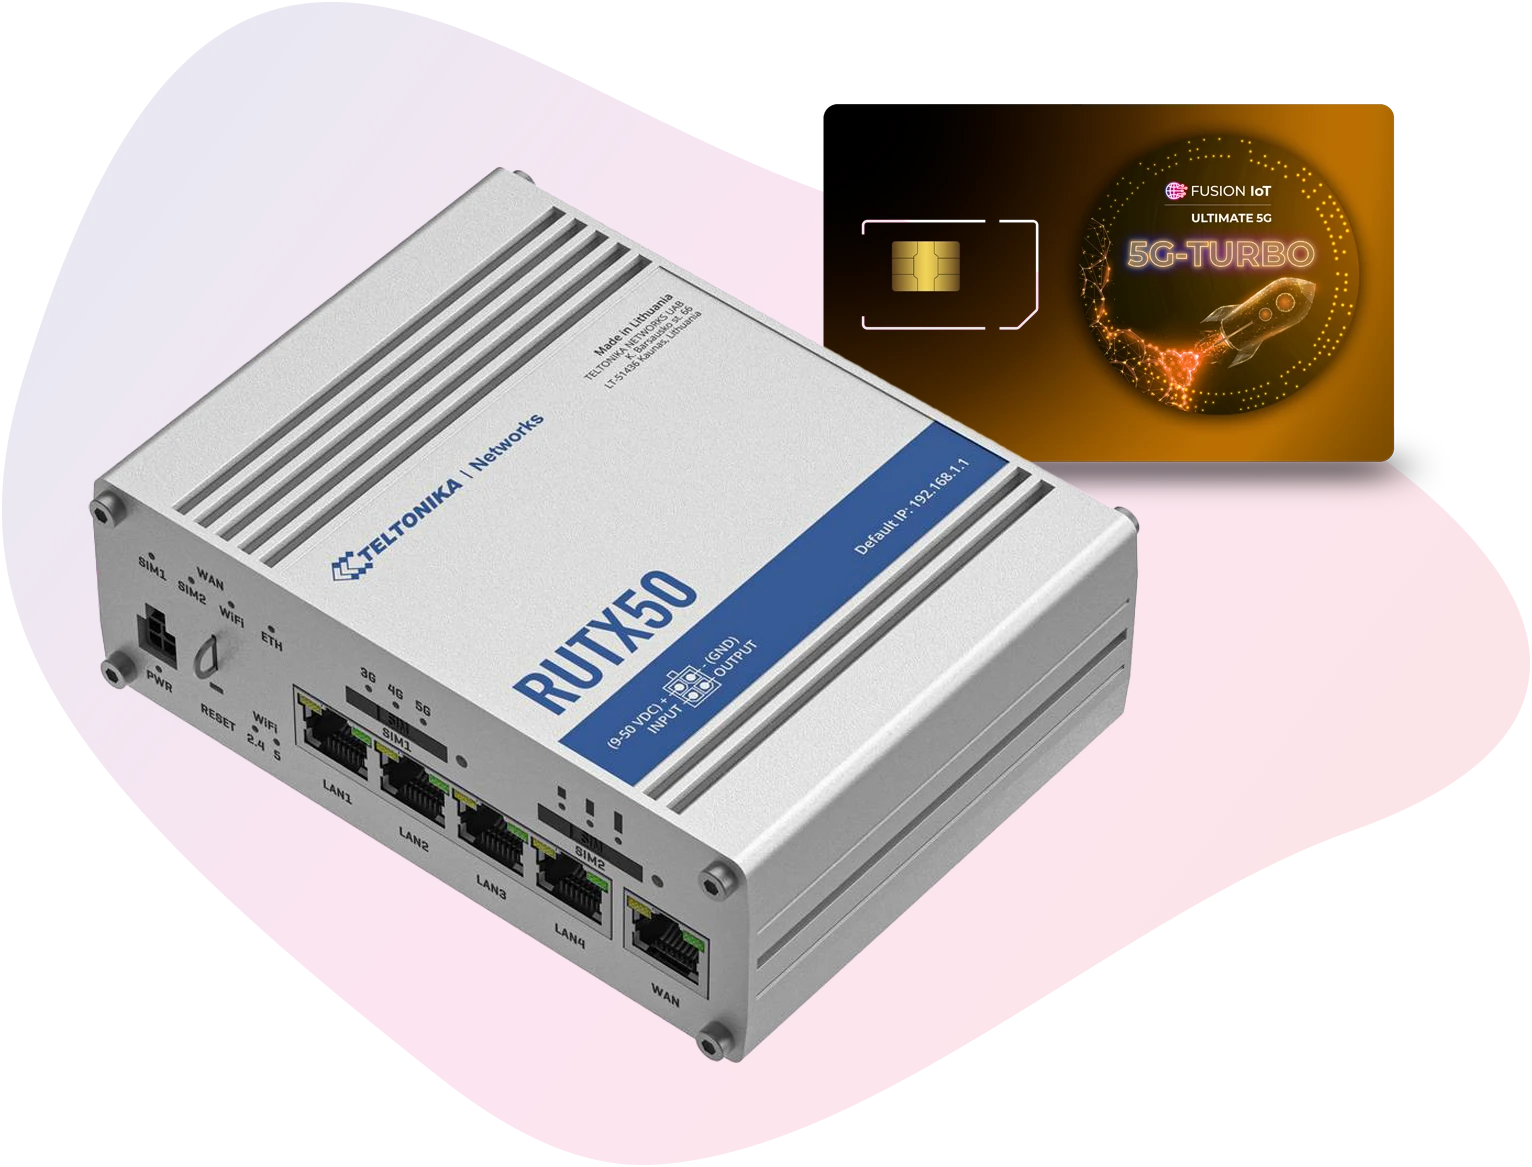 Abbild der IoT Lösung "Mobiles 5G Highspeed Internet Package" mit dem Routers RUTX50 der Teltonika und einer FUSION IoT SIM-Karte davor